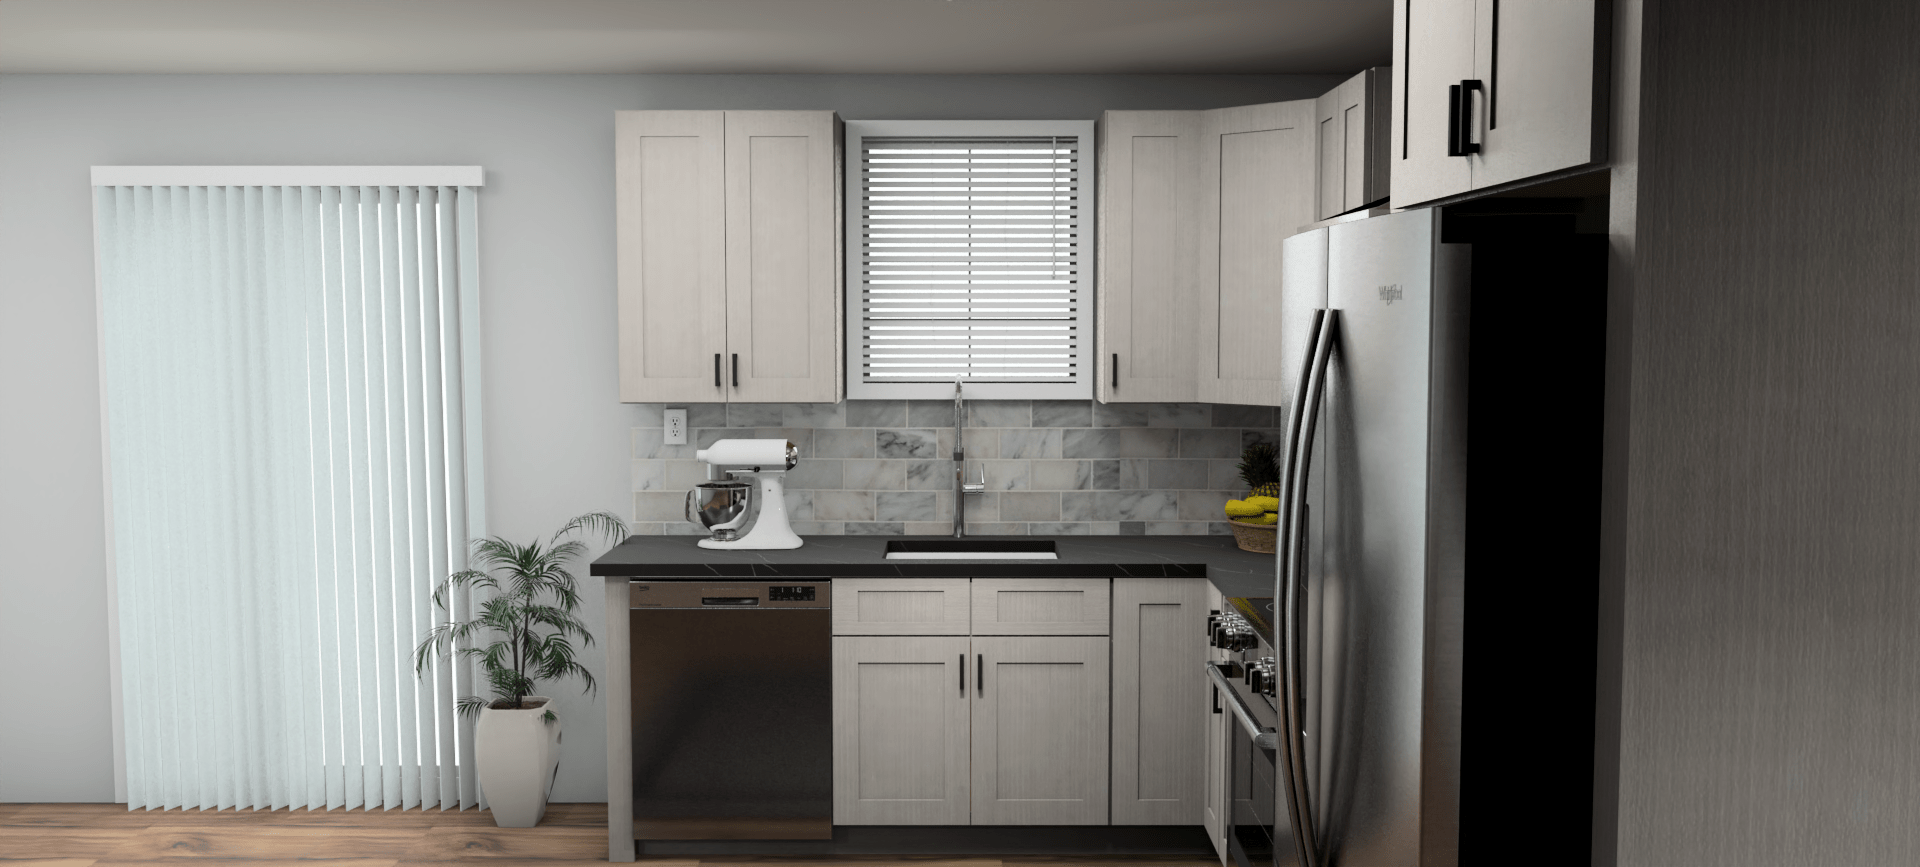 Fabuwood Allure Onyx Horizon 8 x 12 L Shaped Kitchen Side Layout Photo